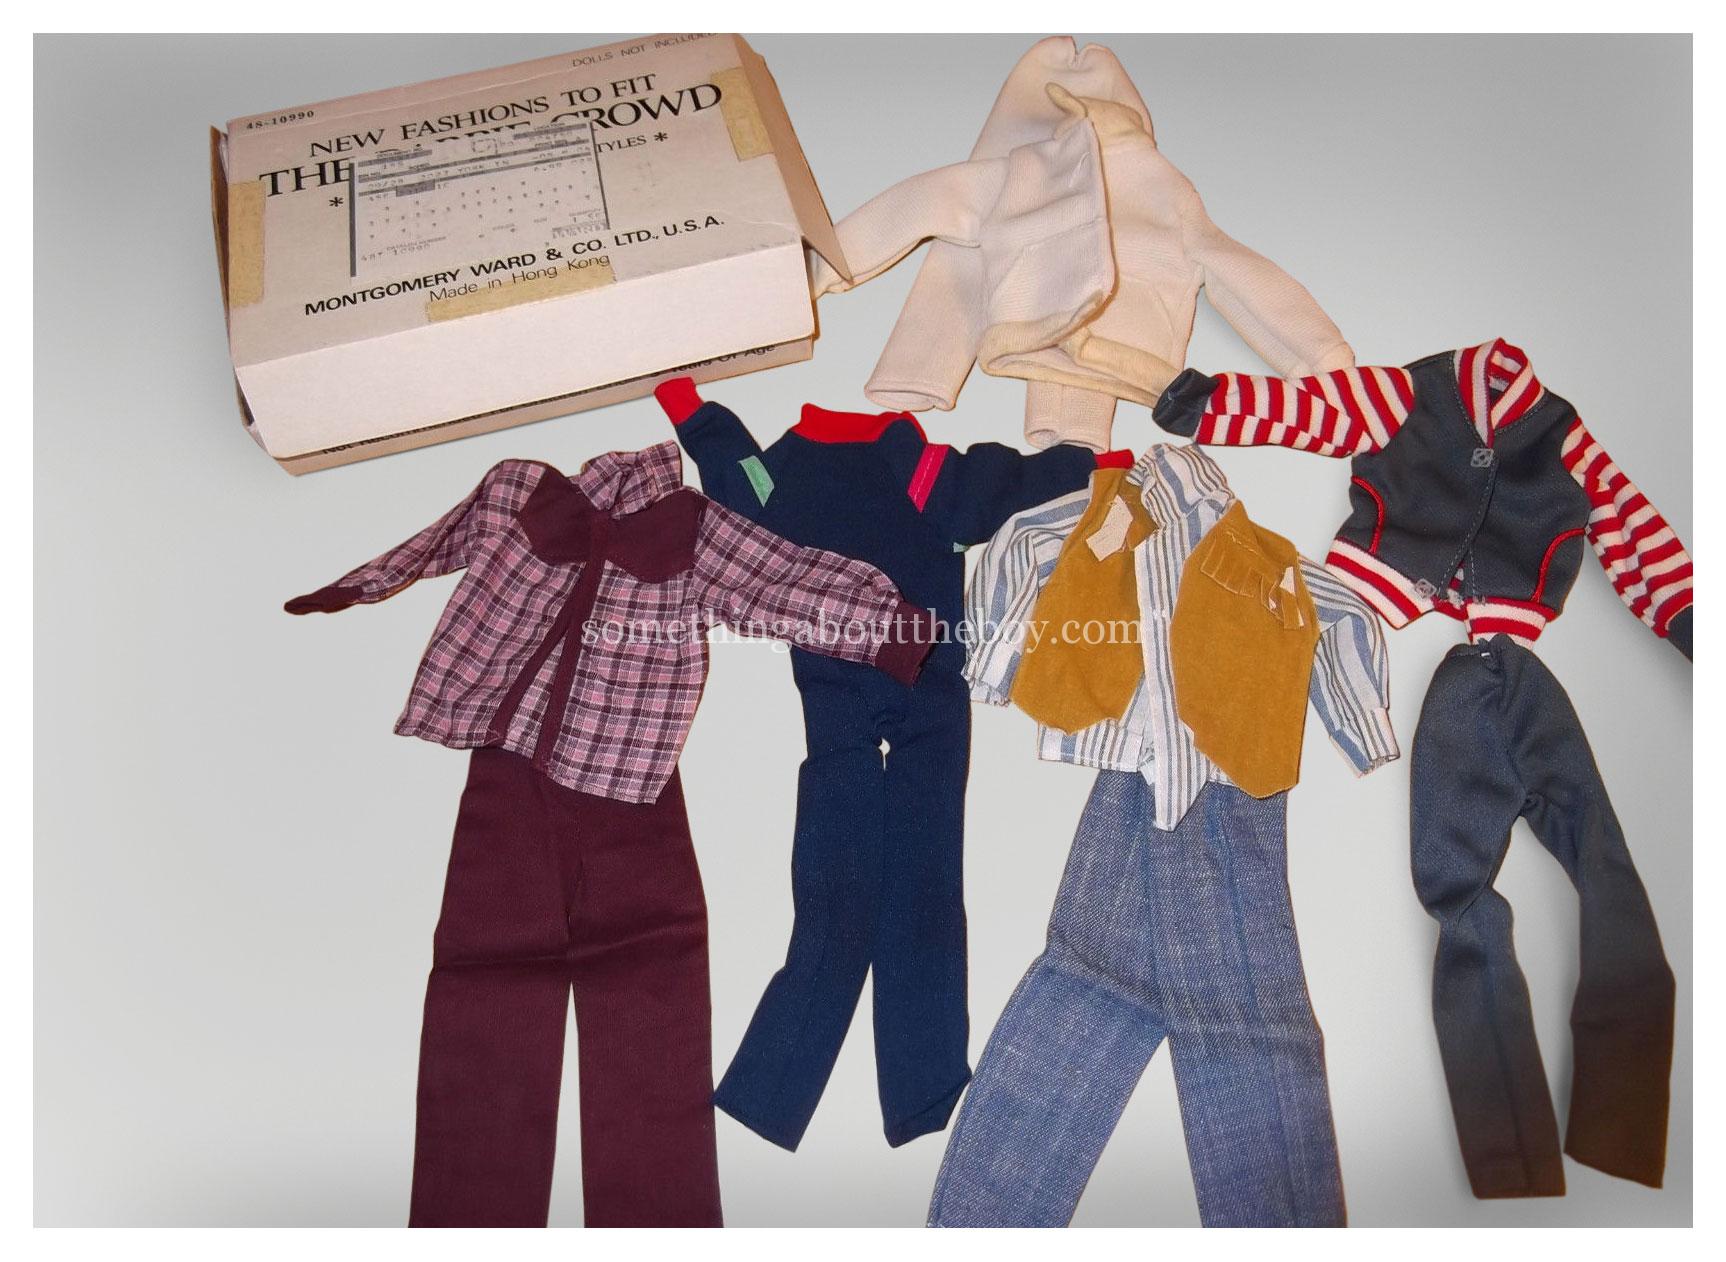 1981 Montgomery Ward clothing set